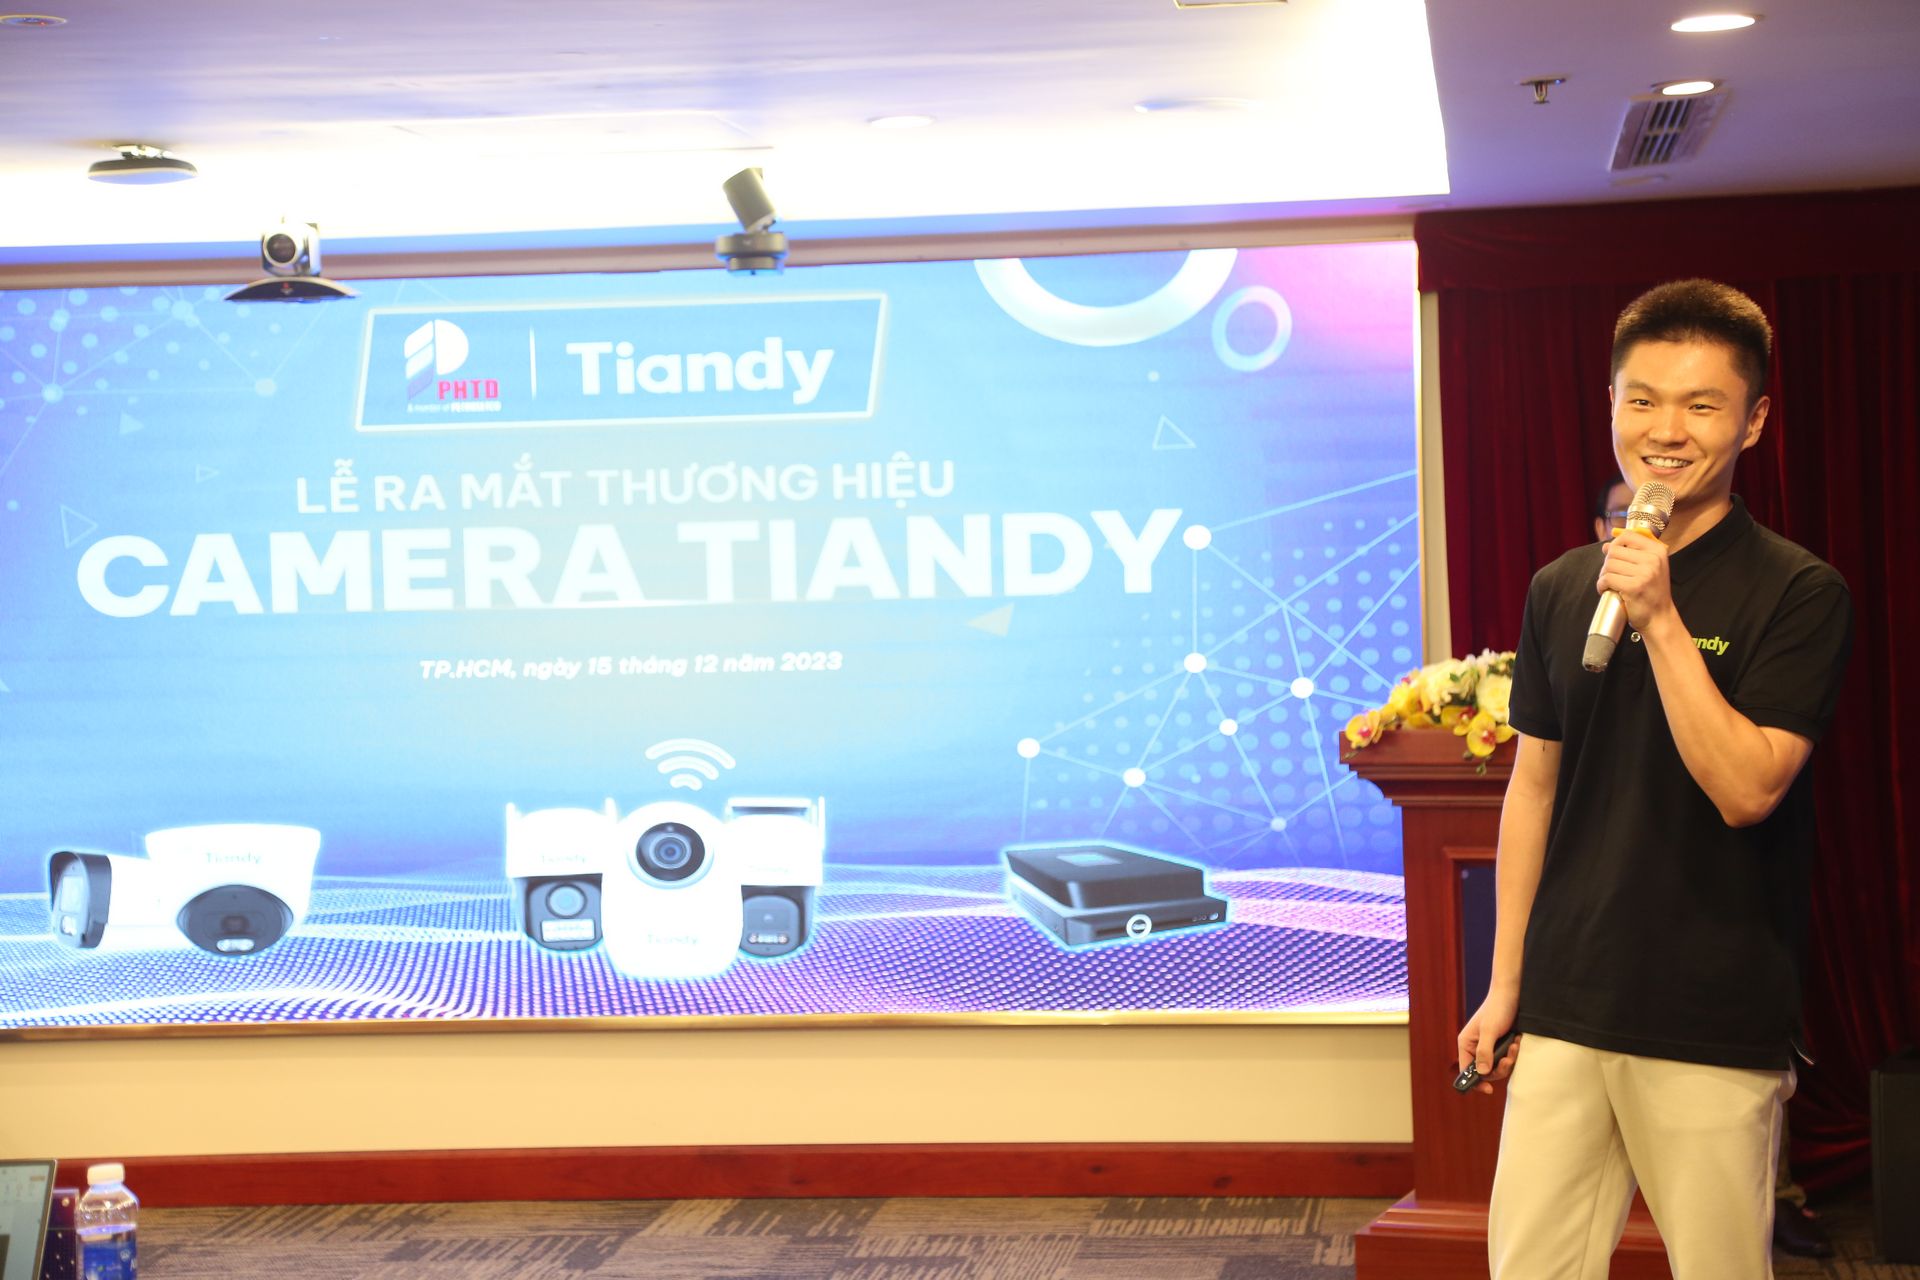 Thương hiệu camera Tiandy ra mắt, giá mềm nhưng chất lượng cao - Le ra mat thuong hieu camera tiandy 35